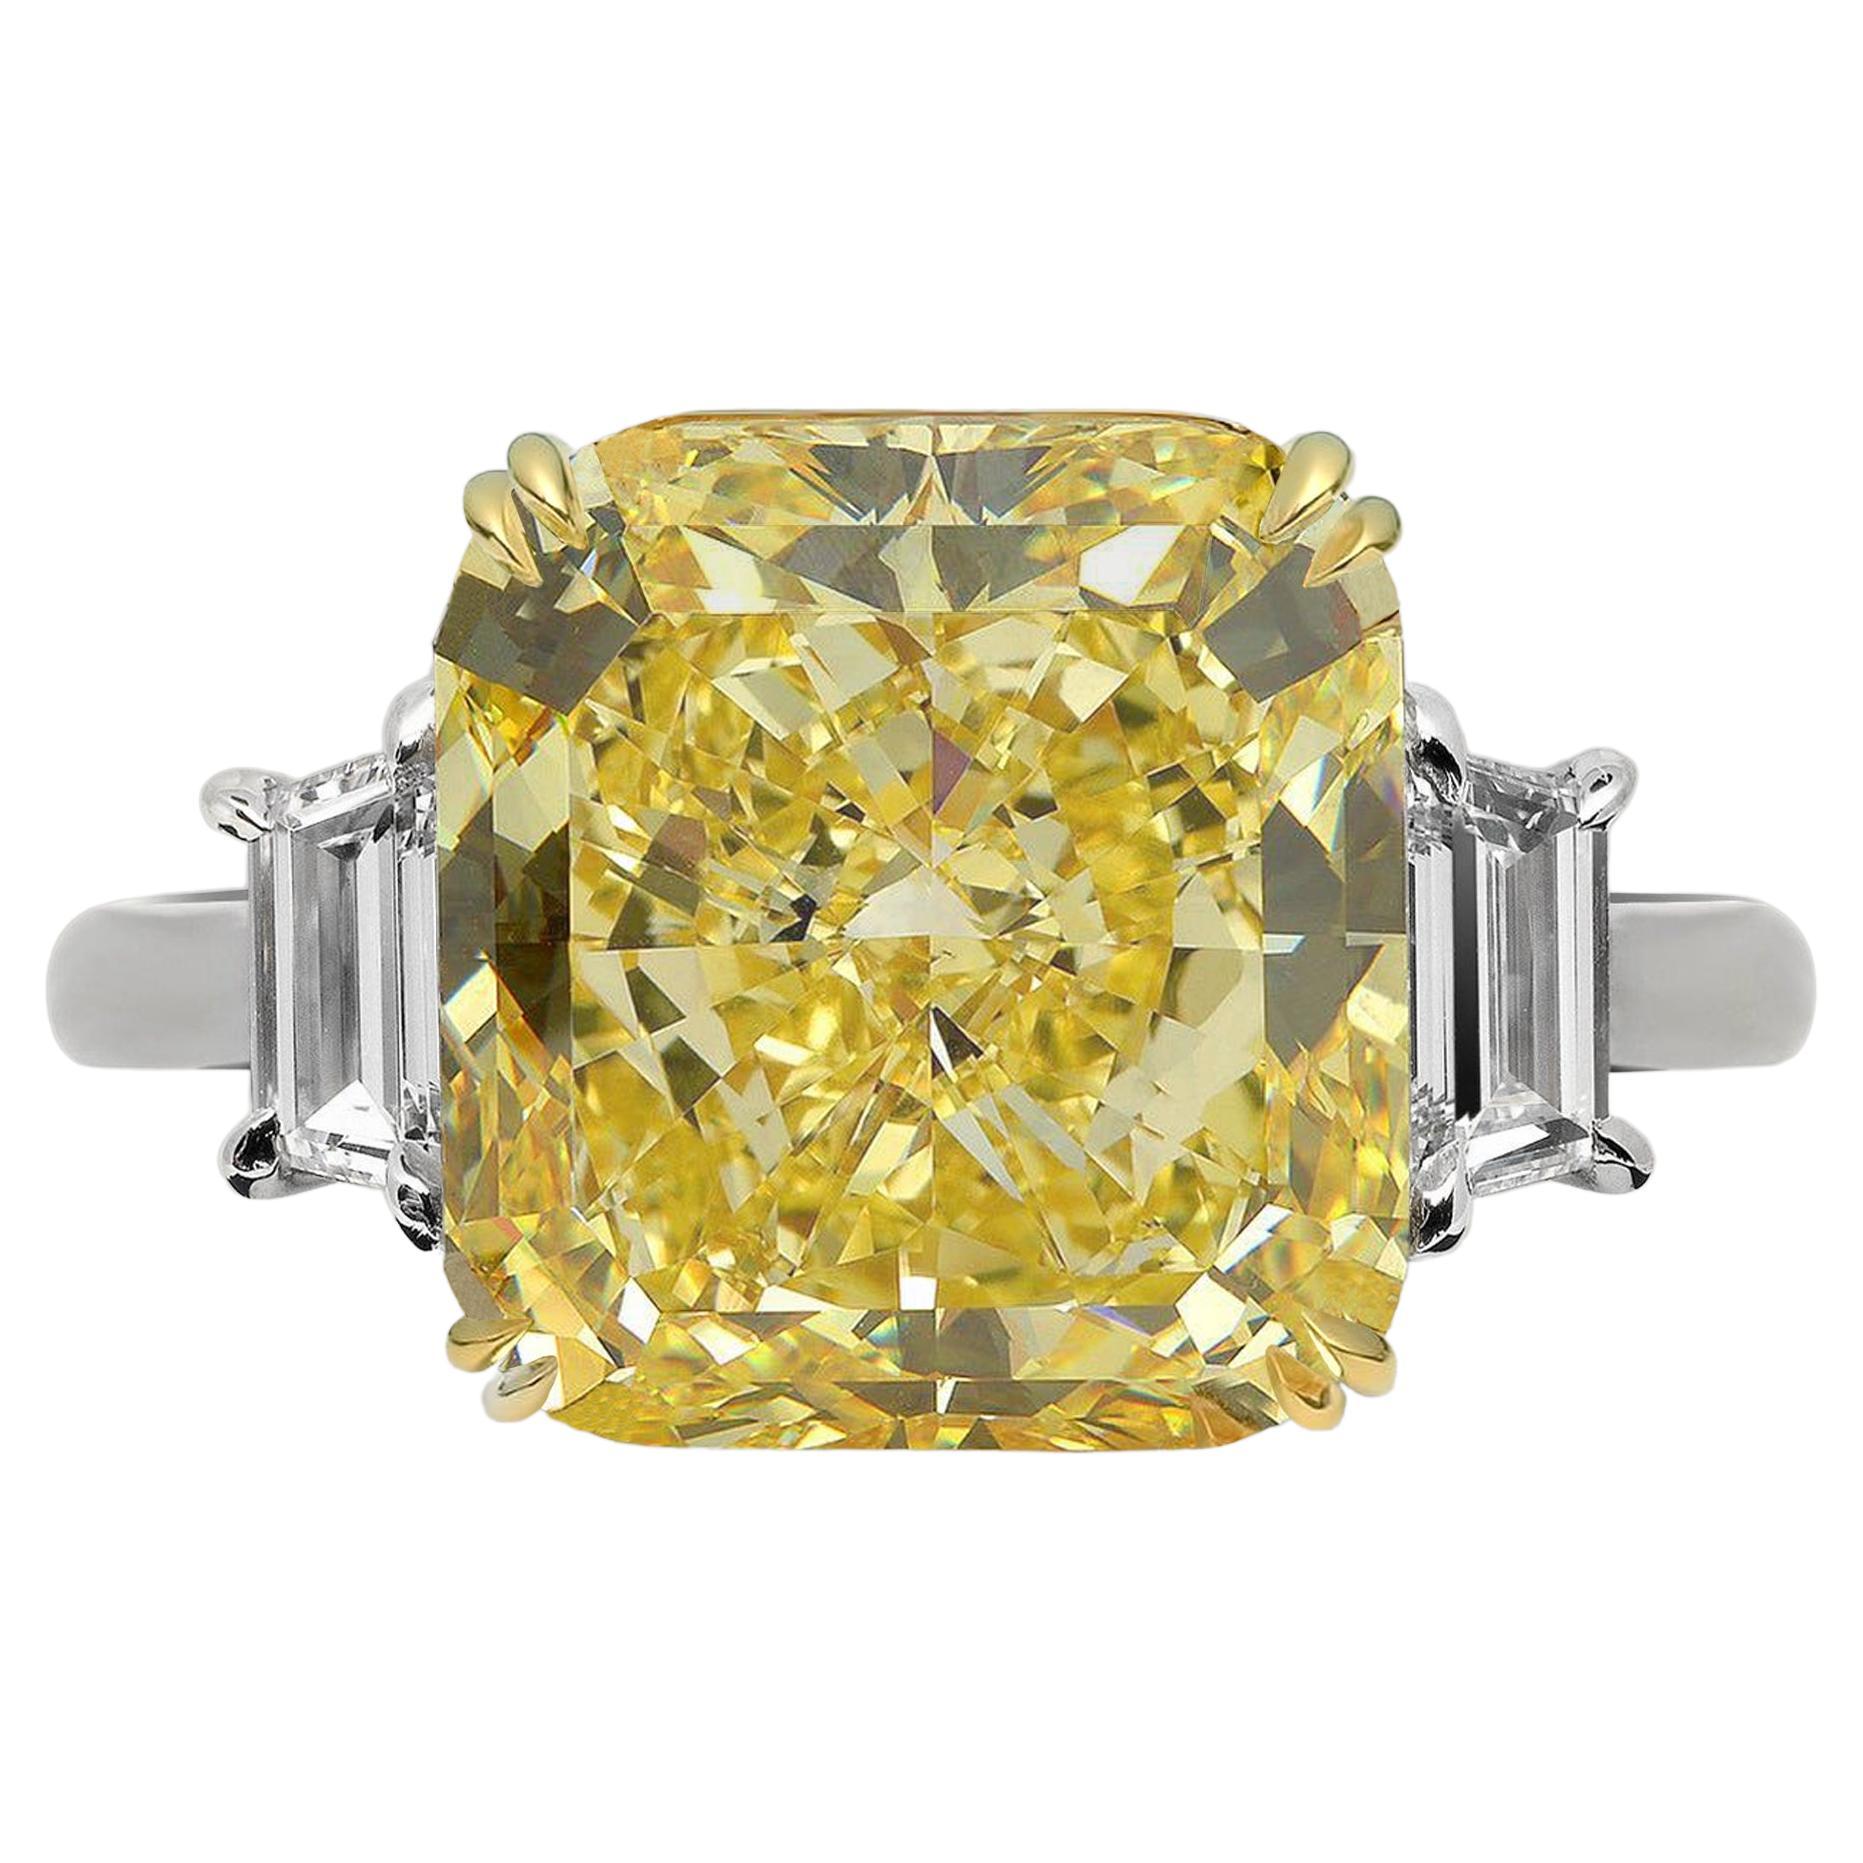 Bague à diamant jaune fantaisie certifié par le GIA, de 10,80 carats et de taille coussin.